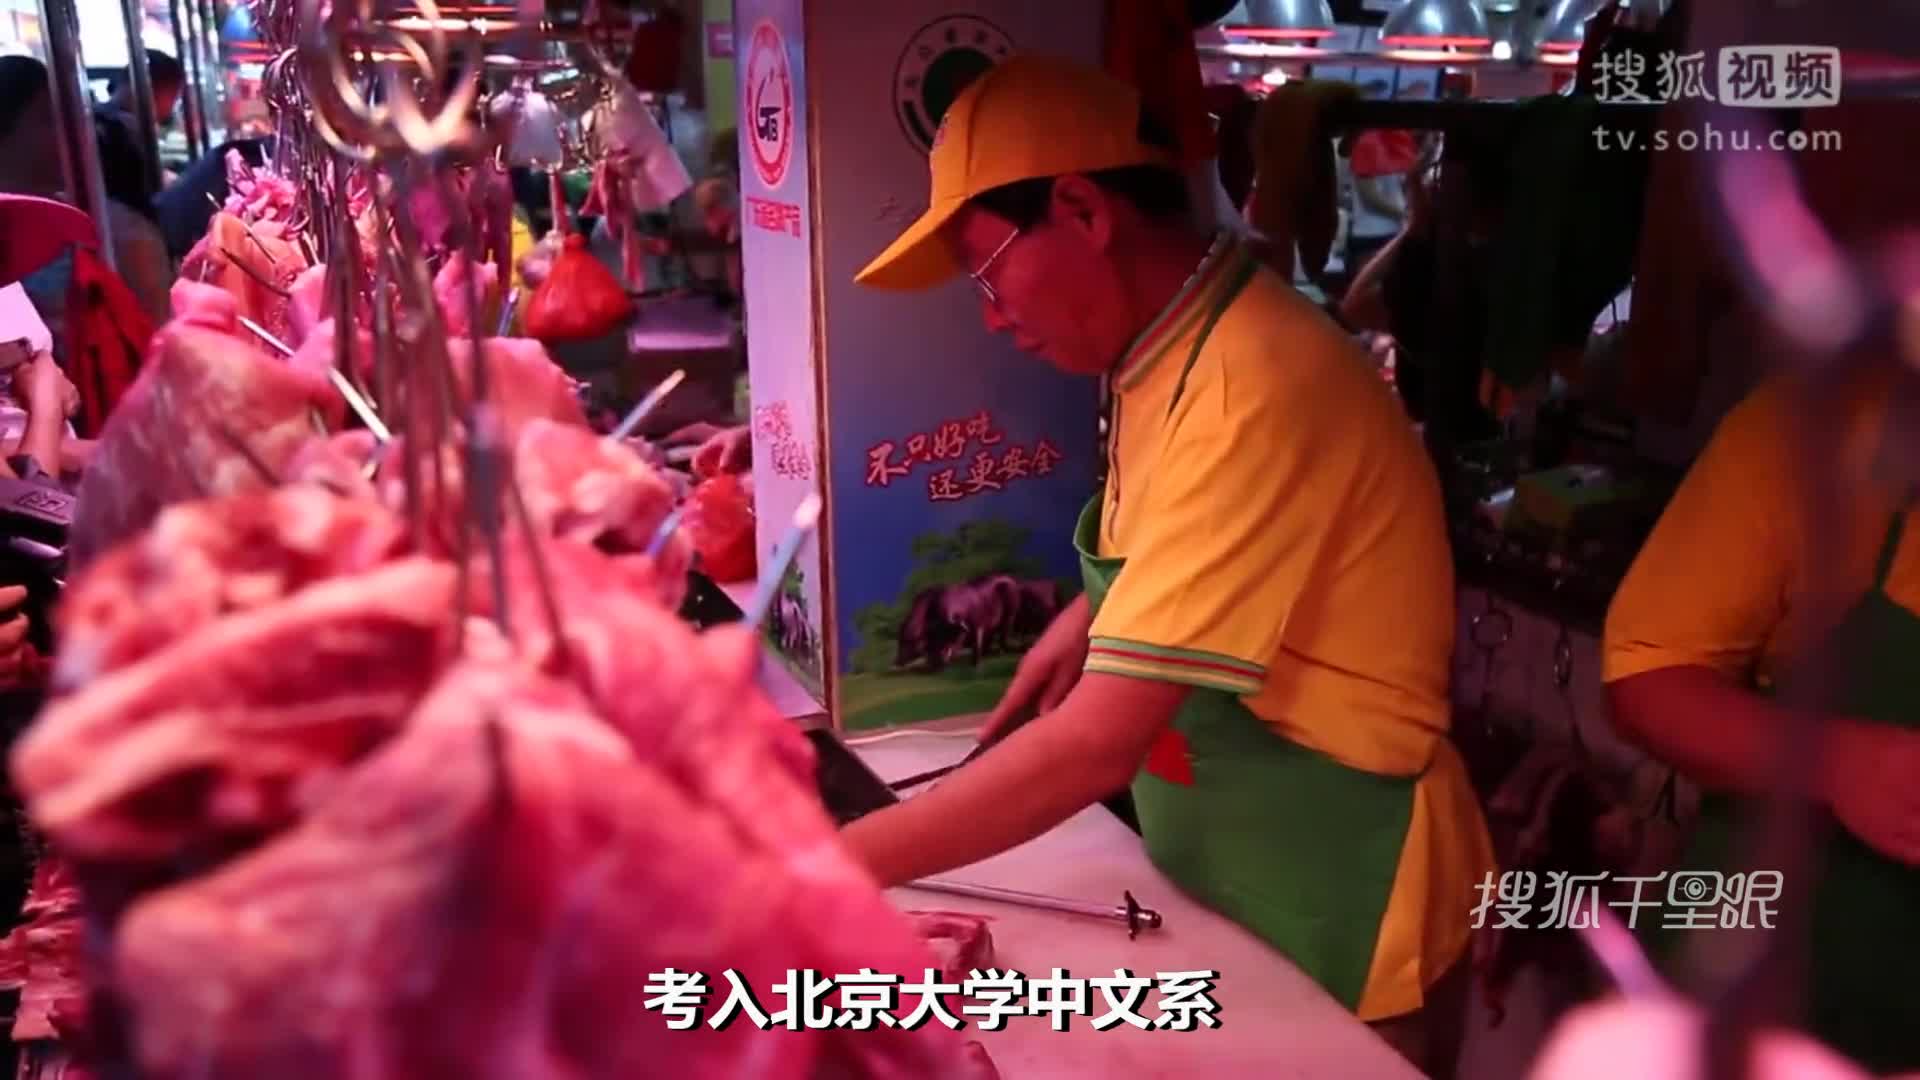 【广州】"北大屠夫" 陆步轩时隔12年再执屠刀卖猪肉